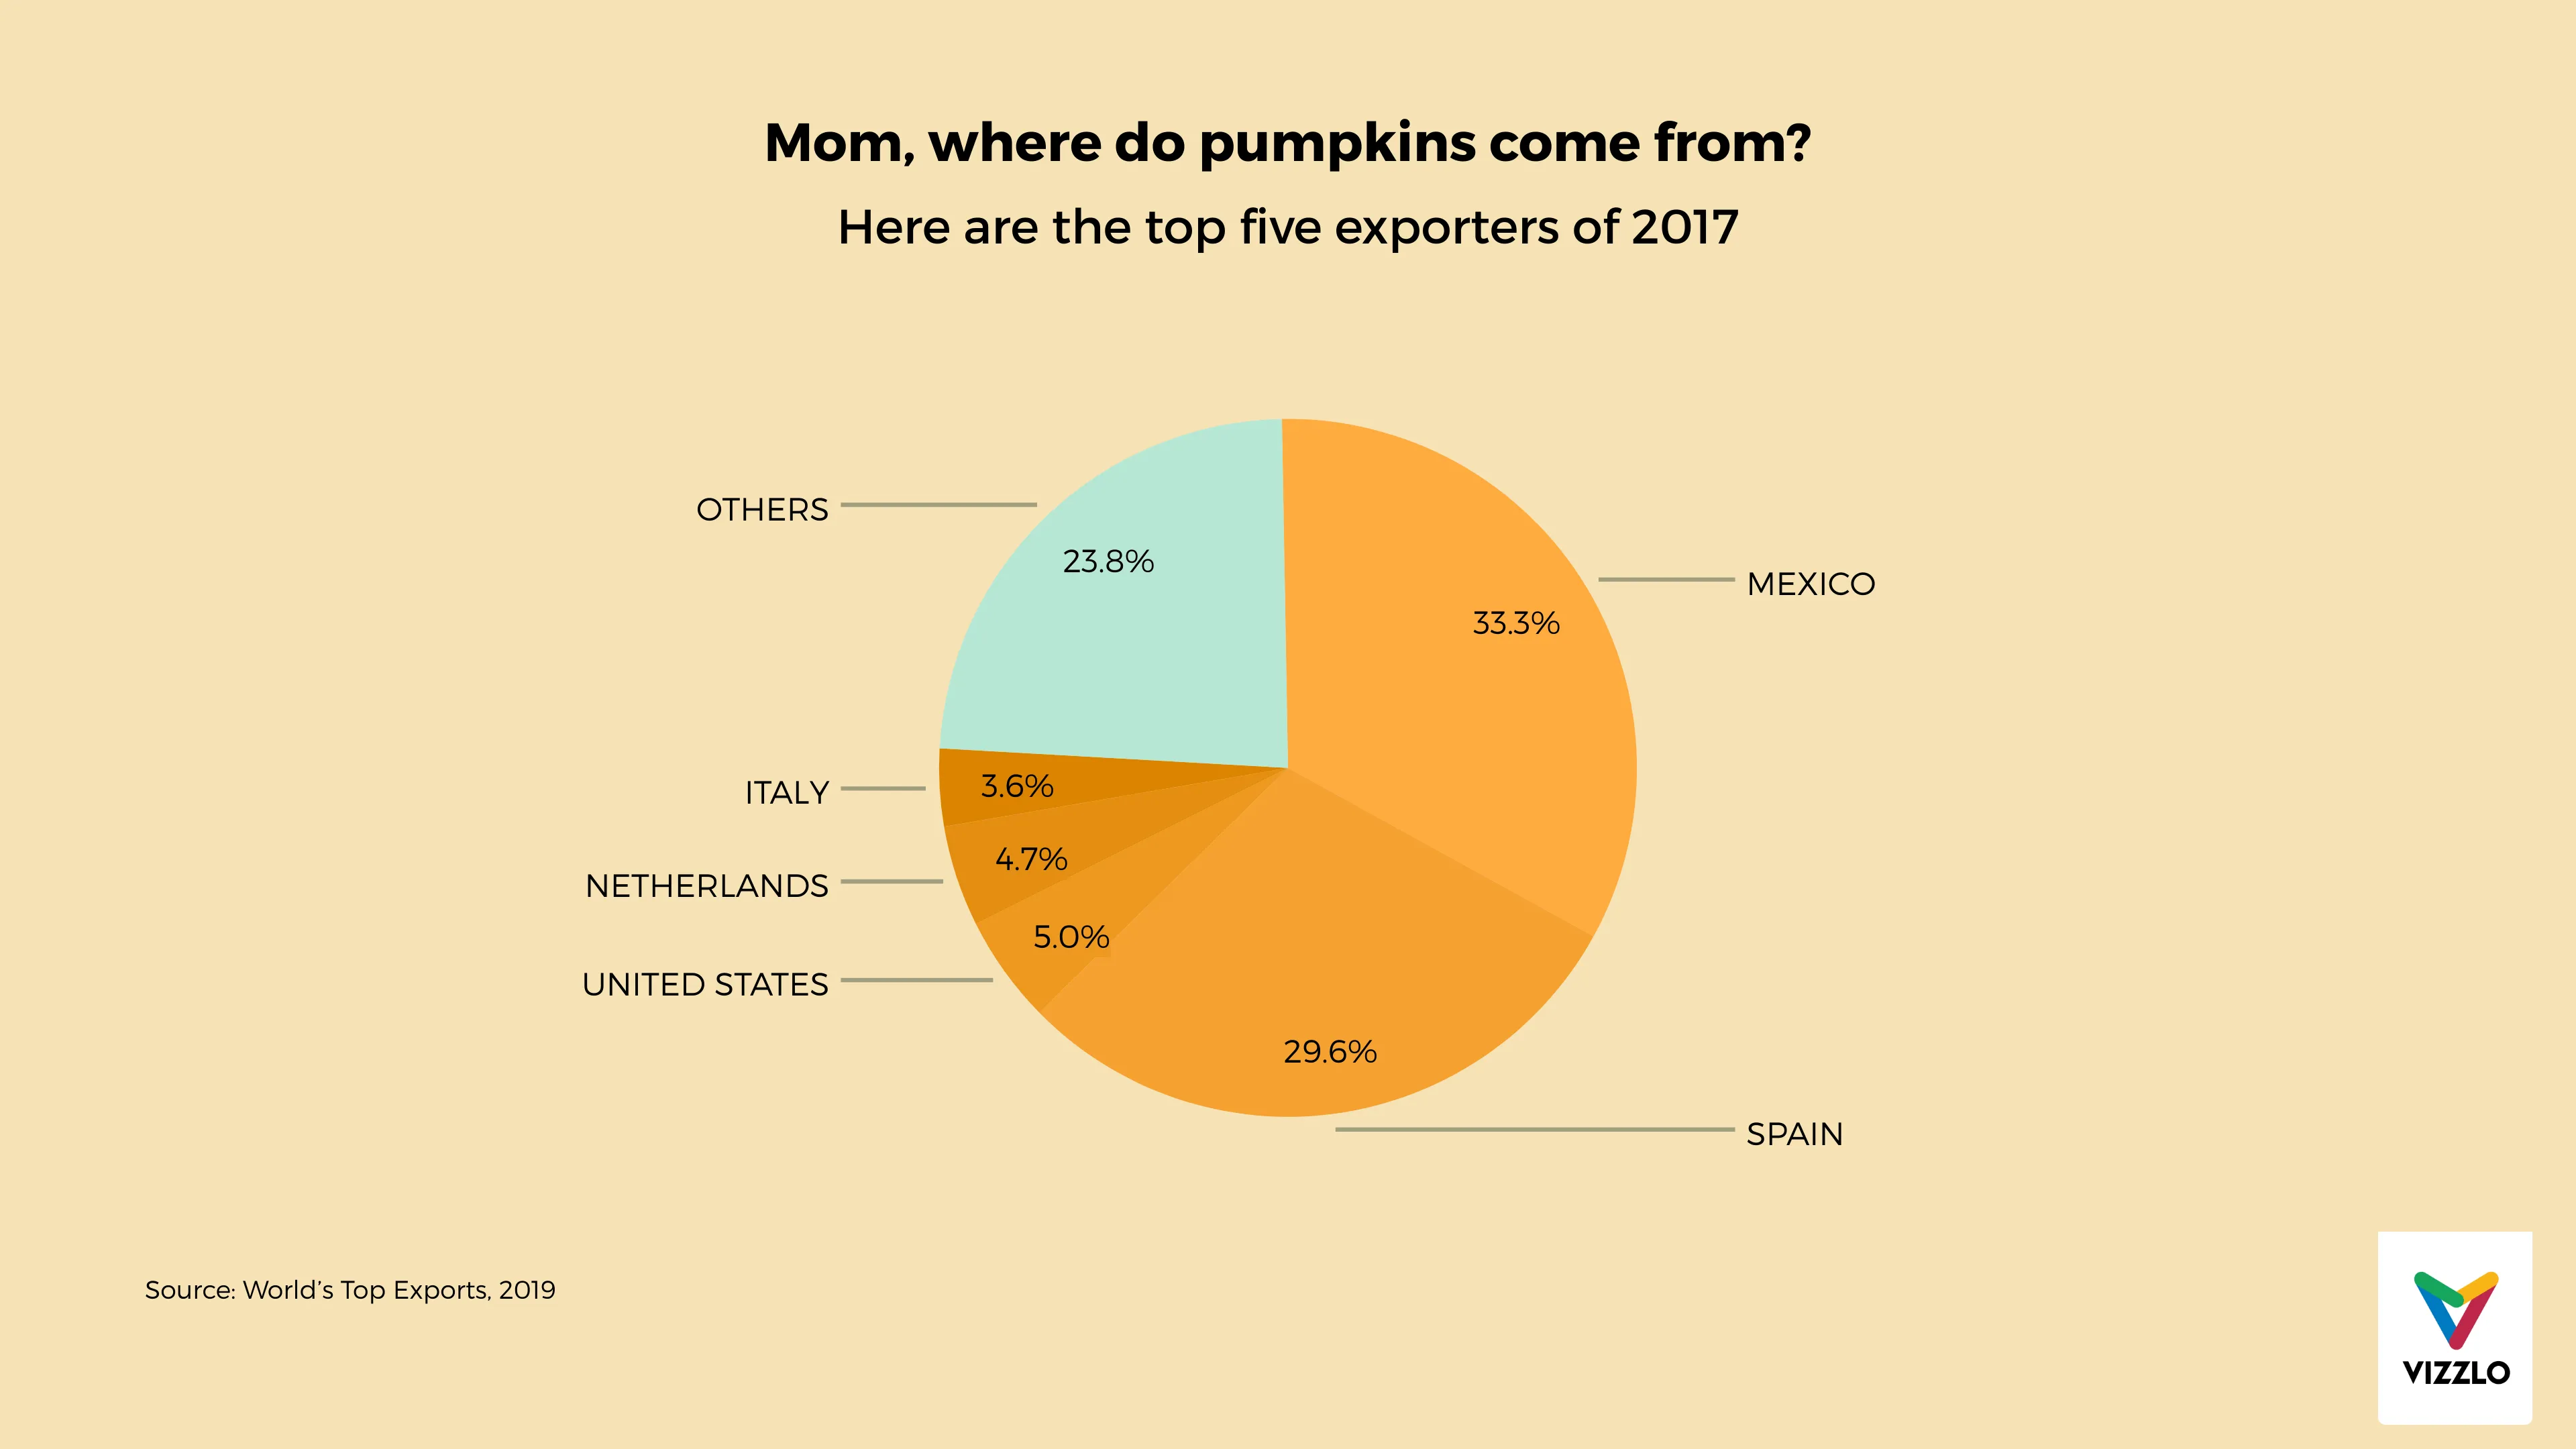 Mom, where do pumpkins come from?